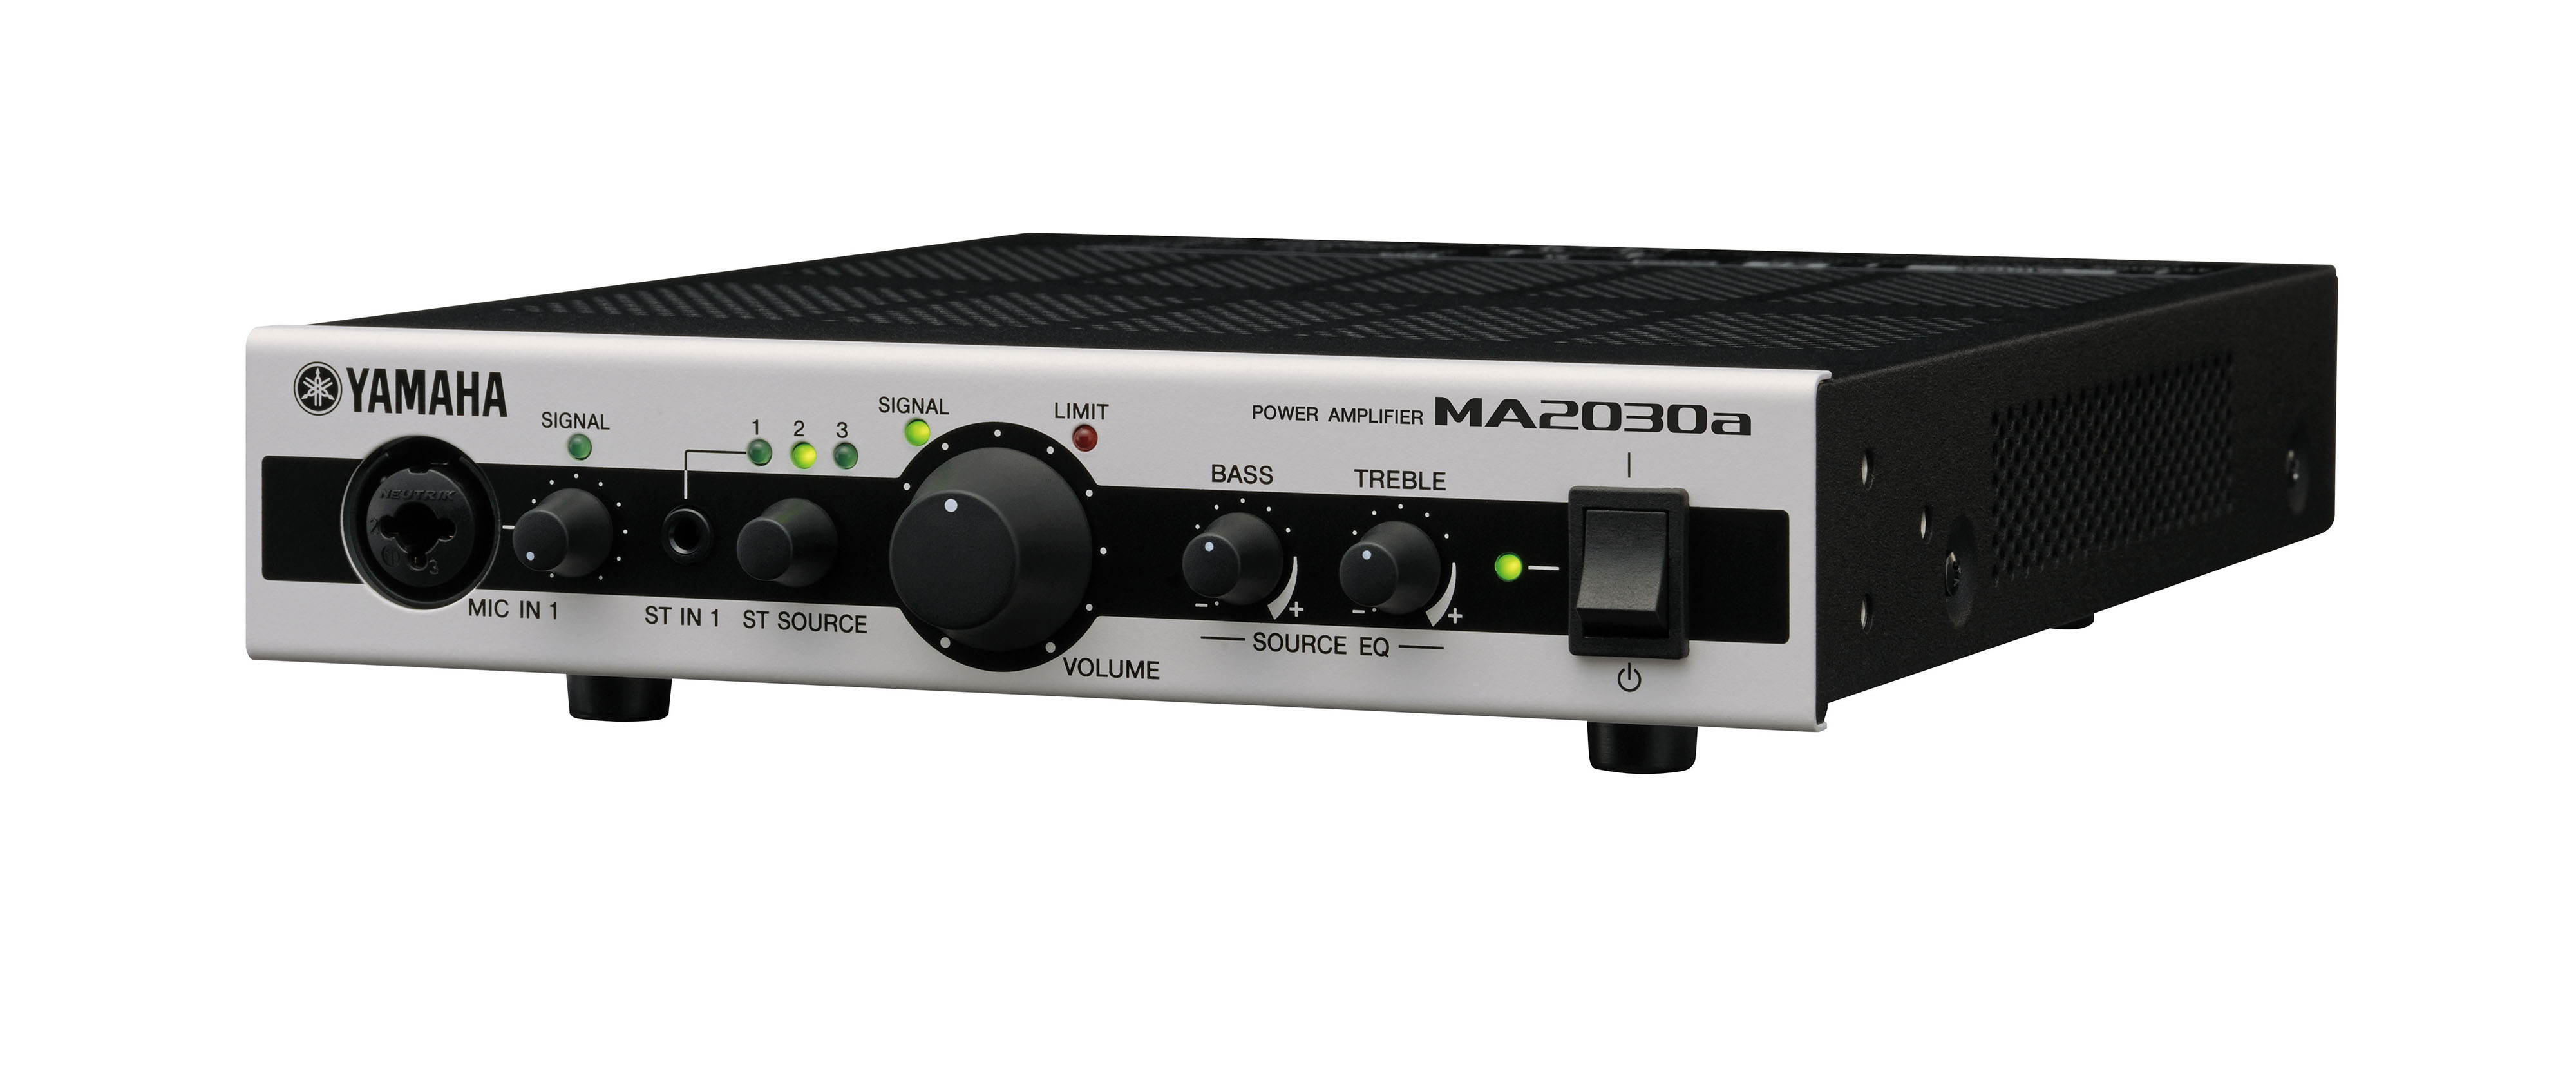 雅马哈(YAMAHA) MA2030a多功能功放 商用安装功放 2.0声道专业功放 金属外观可用于ktv音响